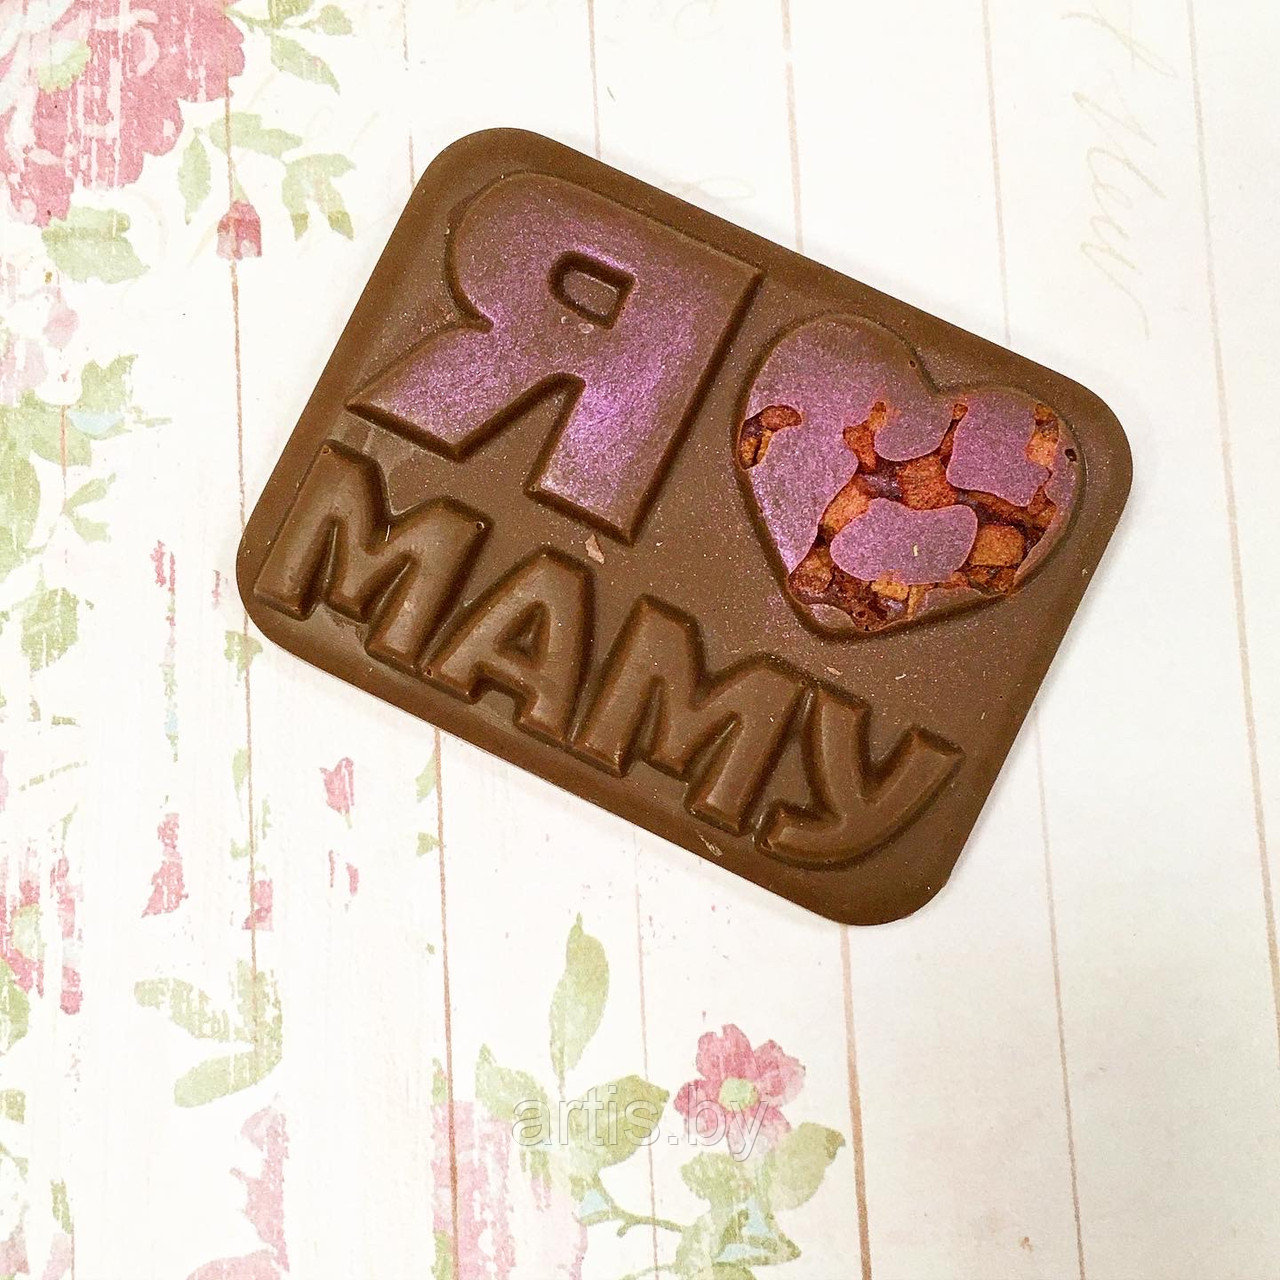 Шоколадная мини плитка "Я люблю маму" (ручная работа).